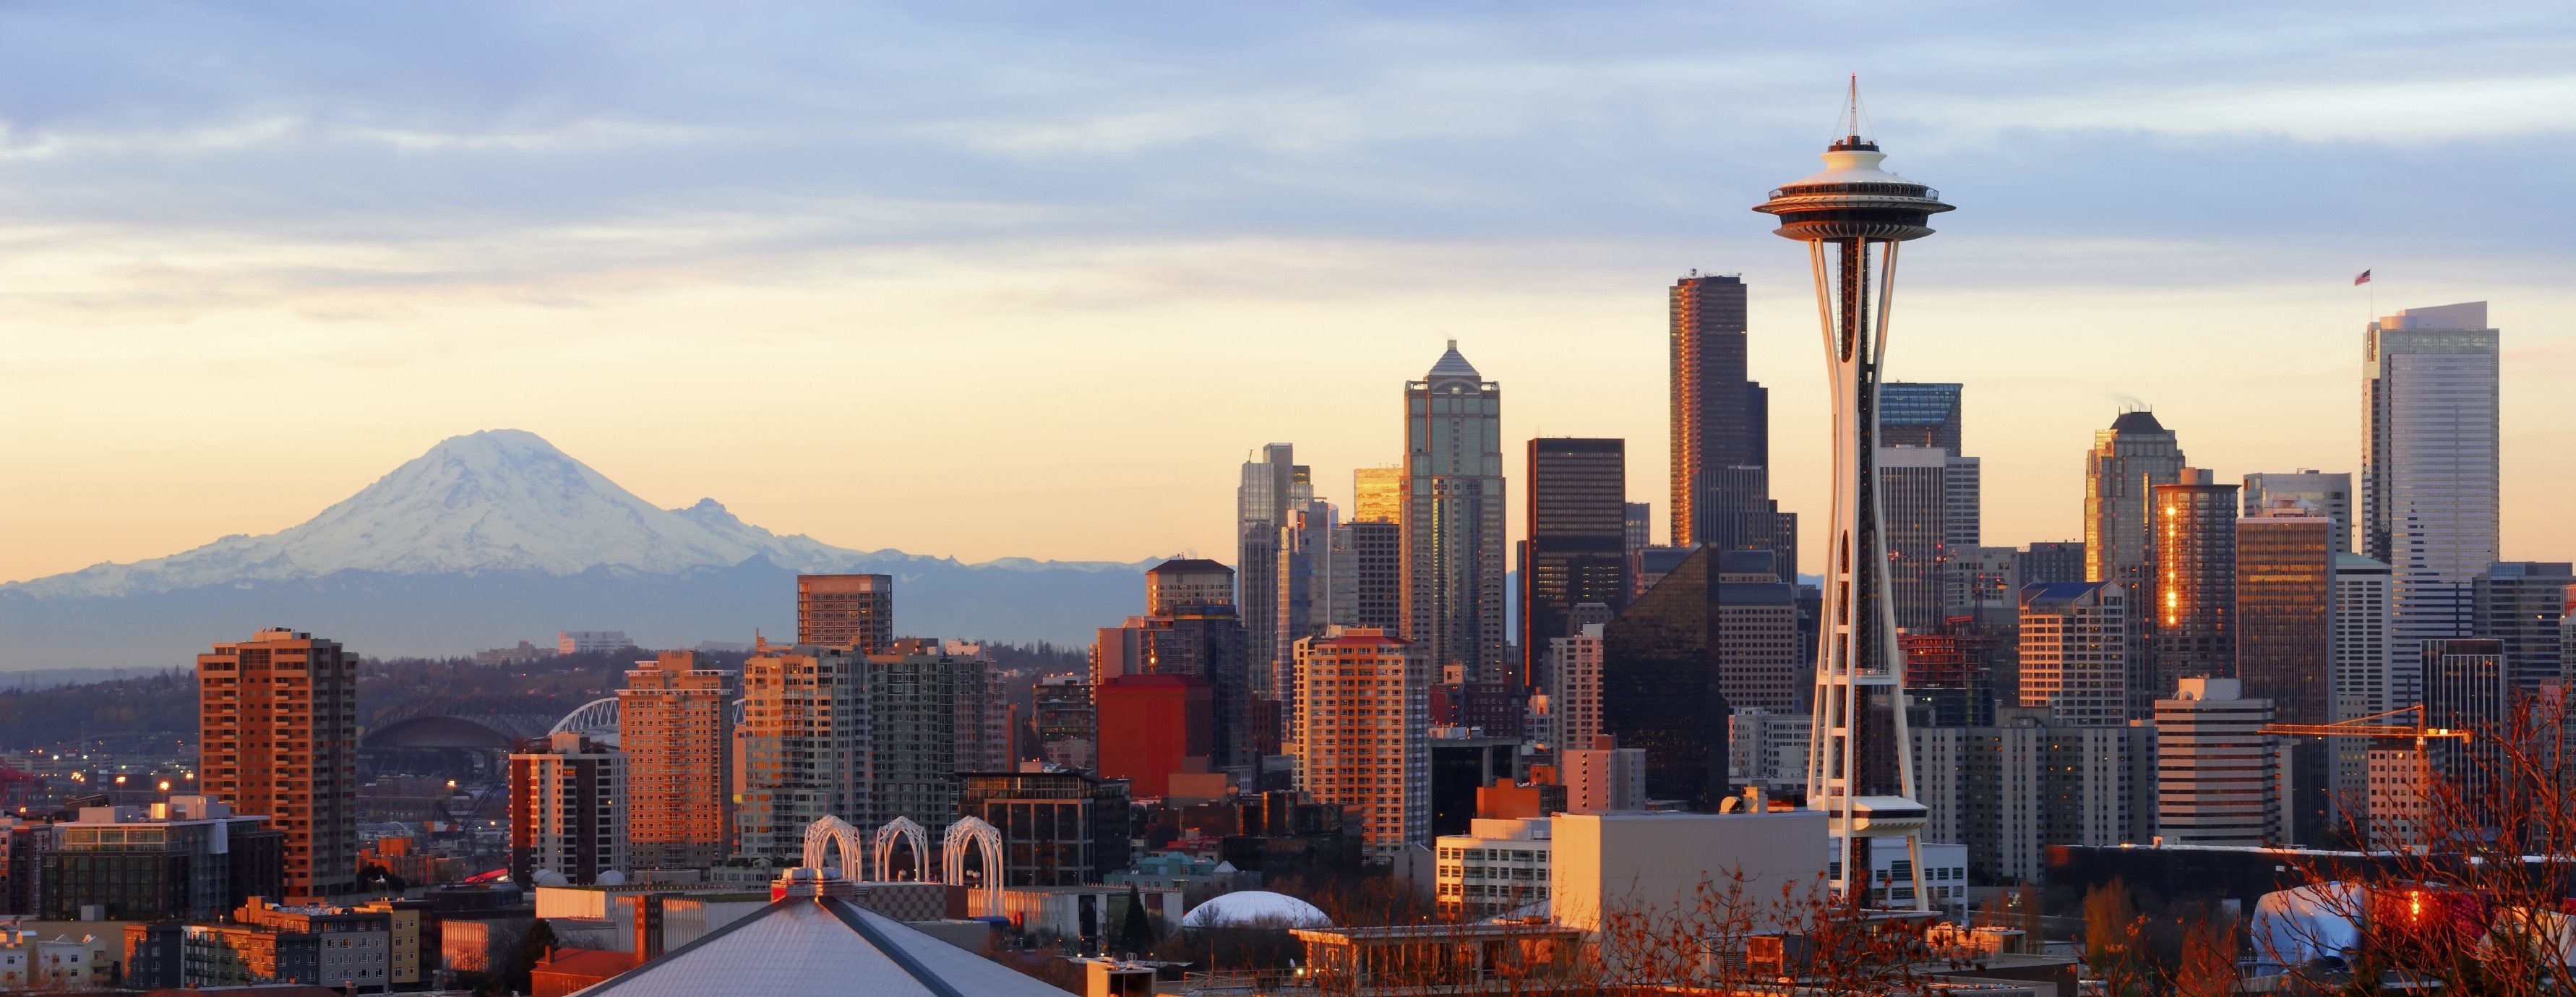 3564x1379 city, Landscape, Seattle, Mount Rainier Wallpapers HD / Desktop and Mobile  Backgrounds